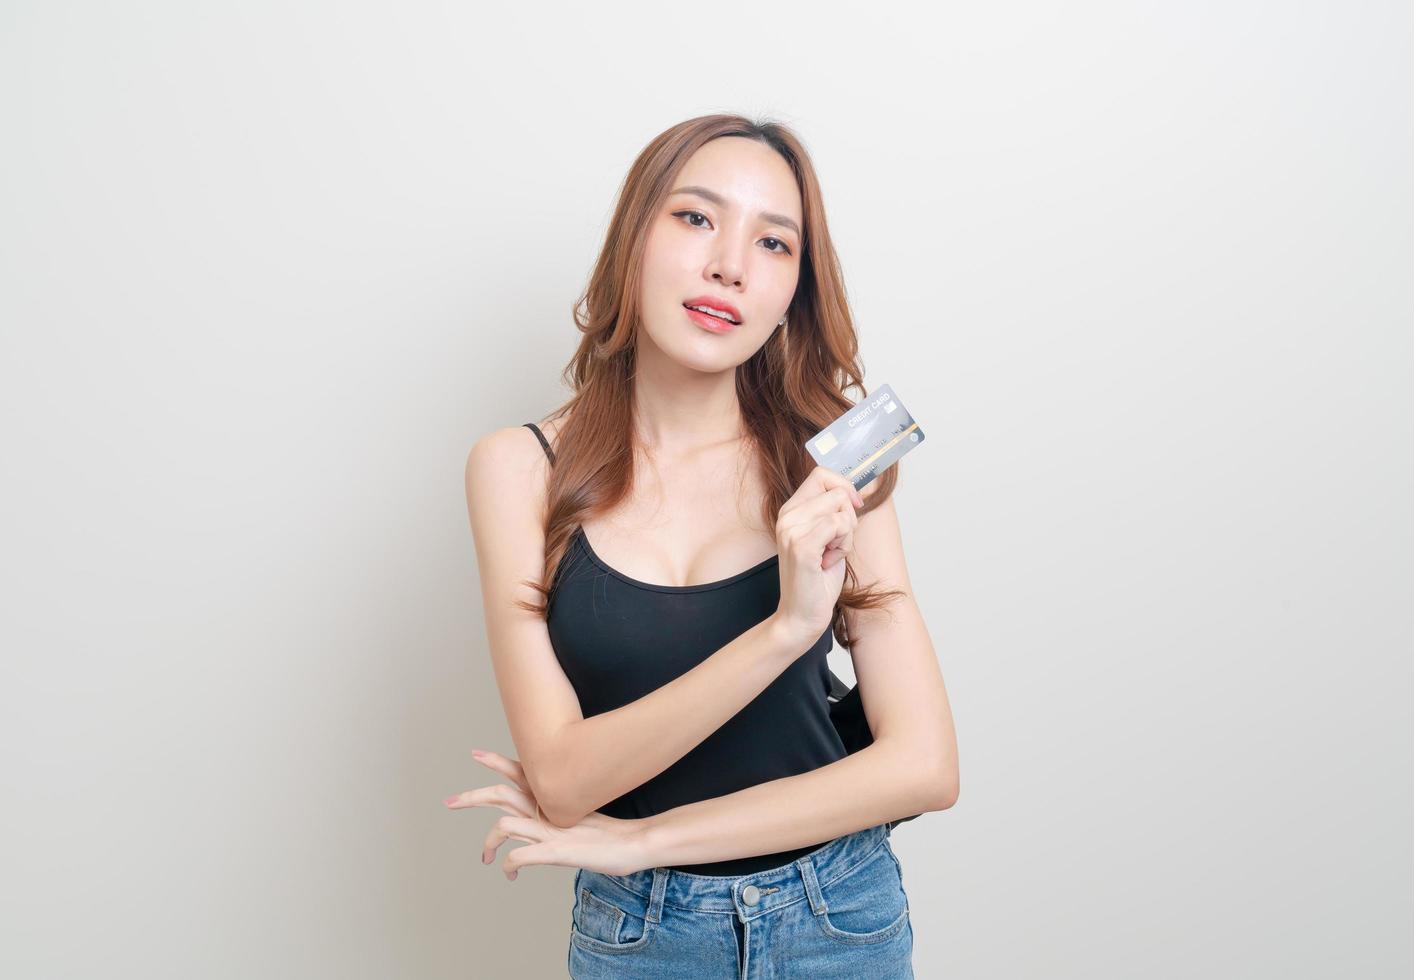 retrato de uma linda mulher asiática segurando um cartão de crédito no fundo branco foto